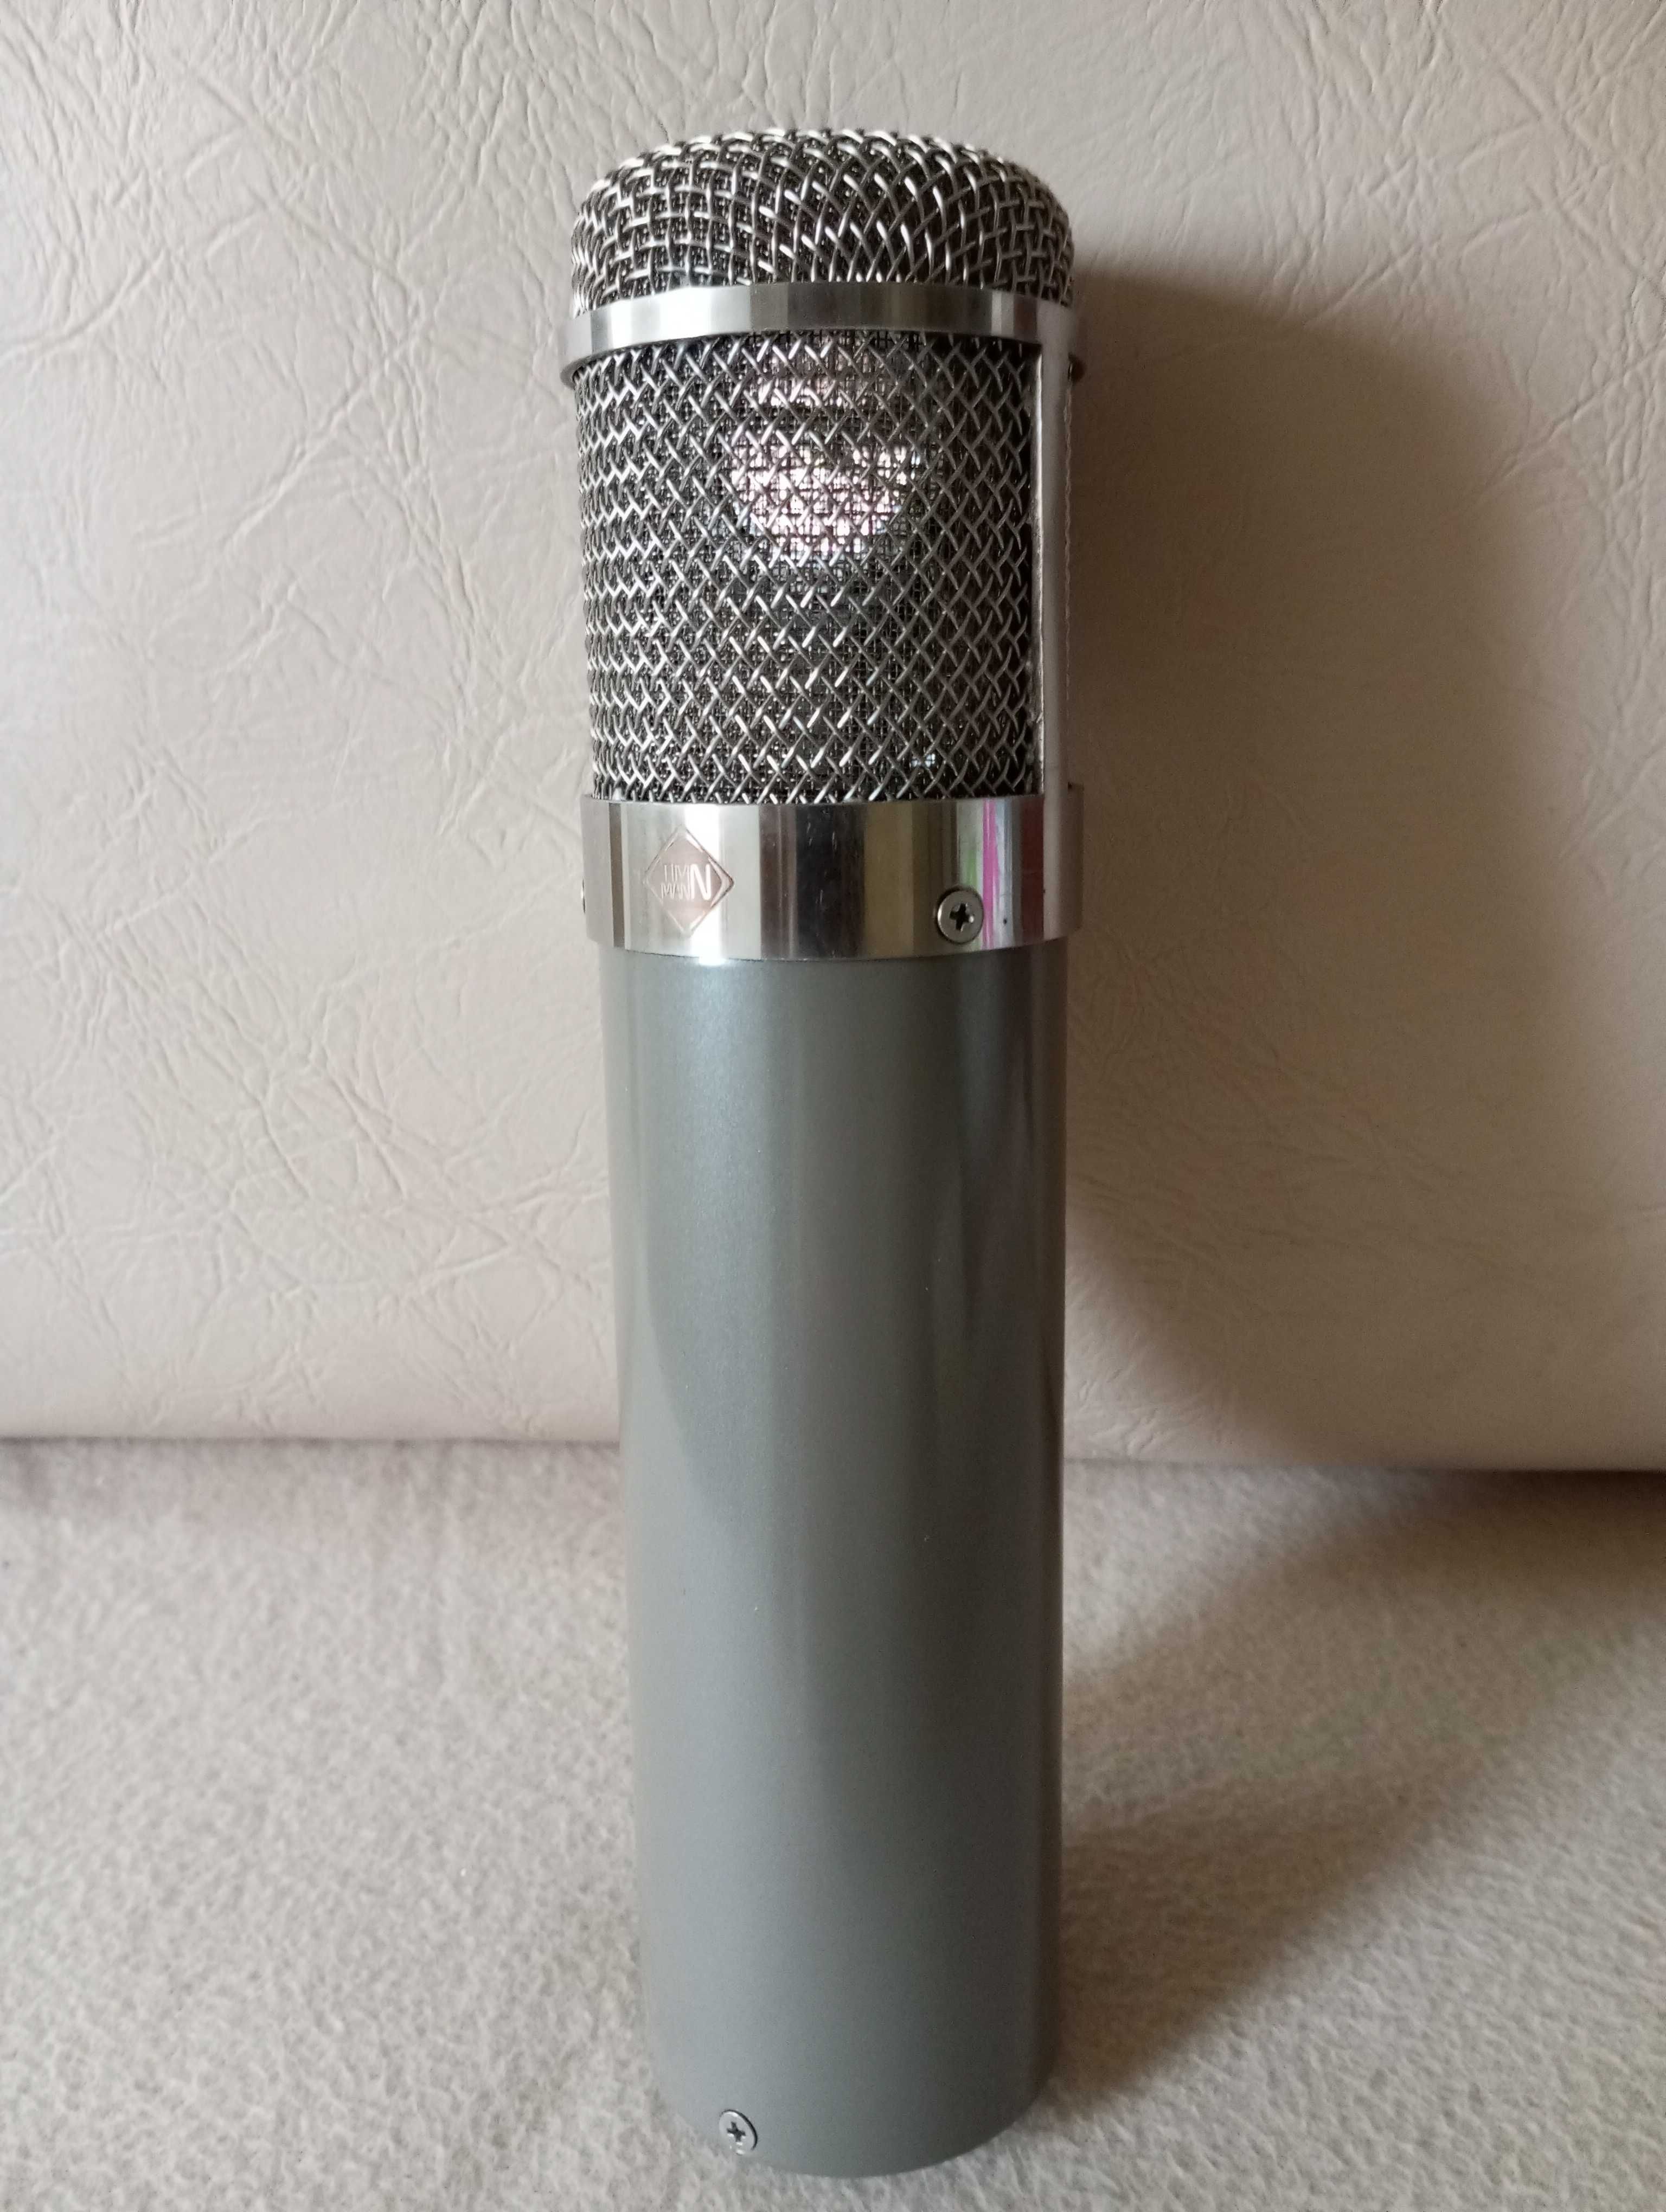 Timmann TU47, microfon pe lampă, Neumann, akg, rode